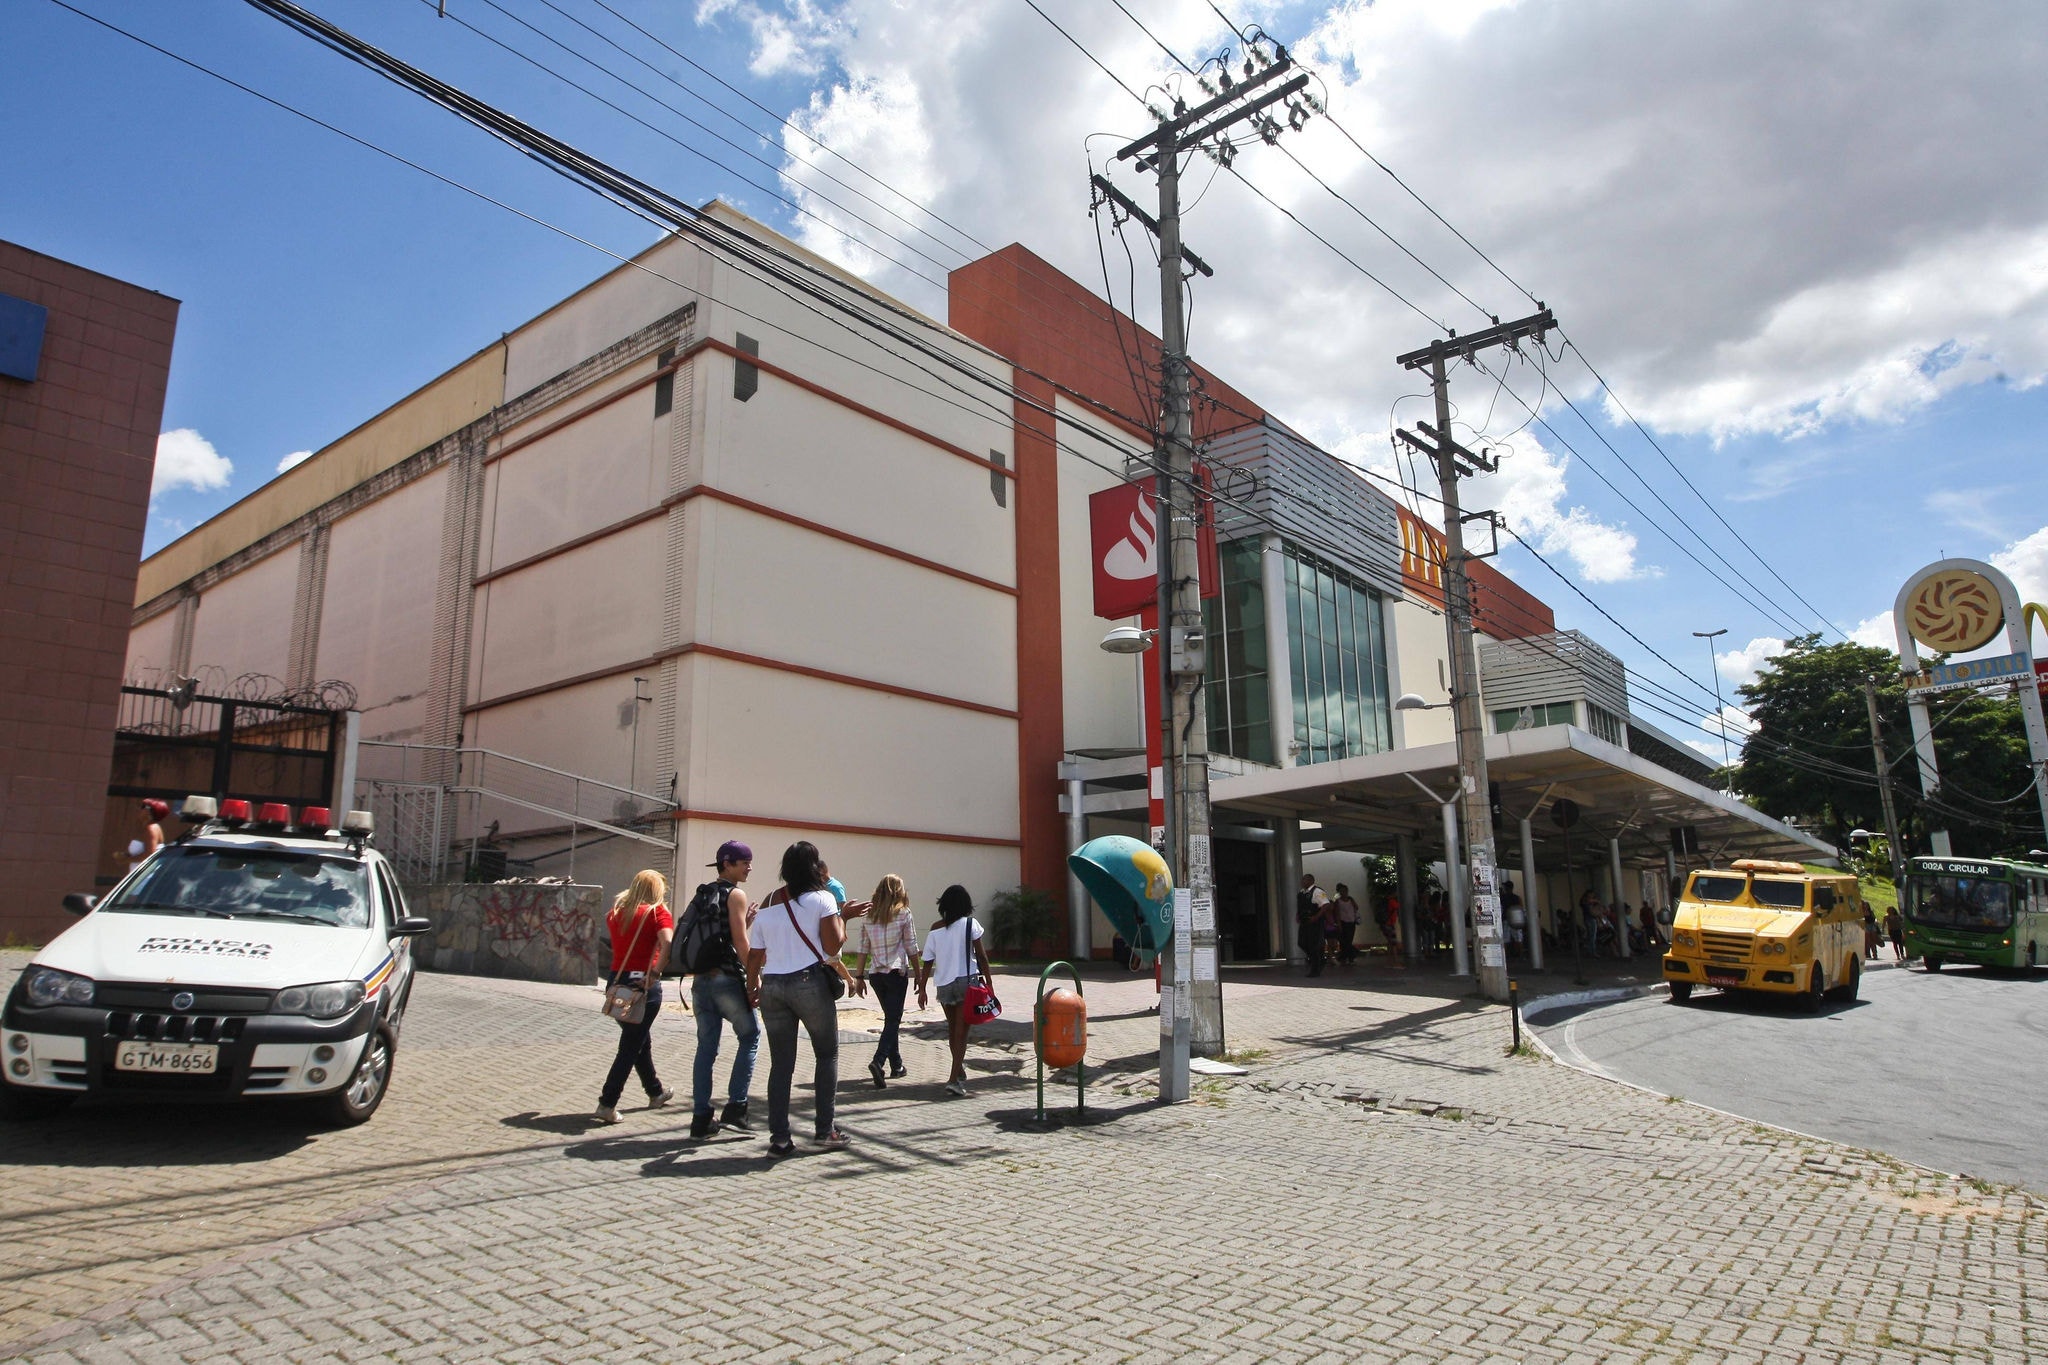 CIDADES - Do dia - Contagem - MG  
Rolezinho Big Shopping 
FOTOS: MARIELA GUIMARAES / O TEMPO 01.02.2014